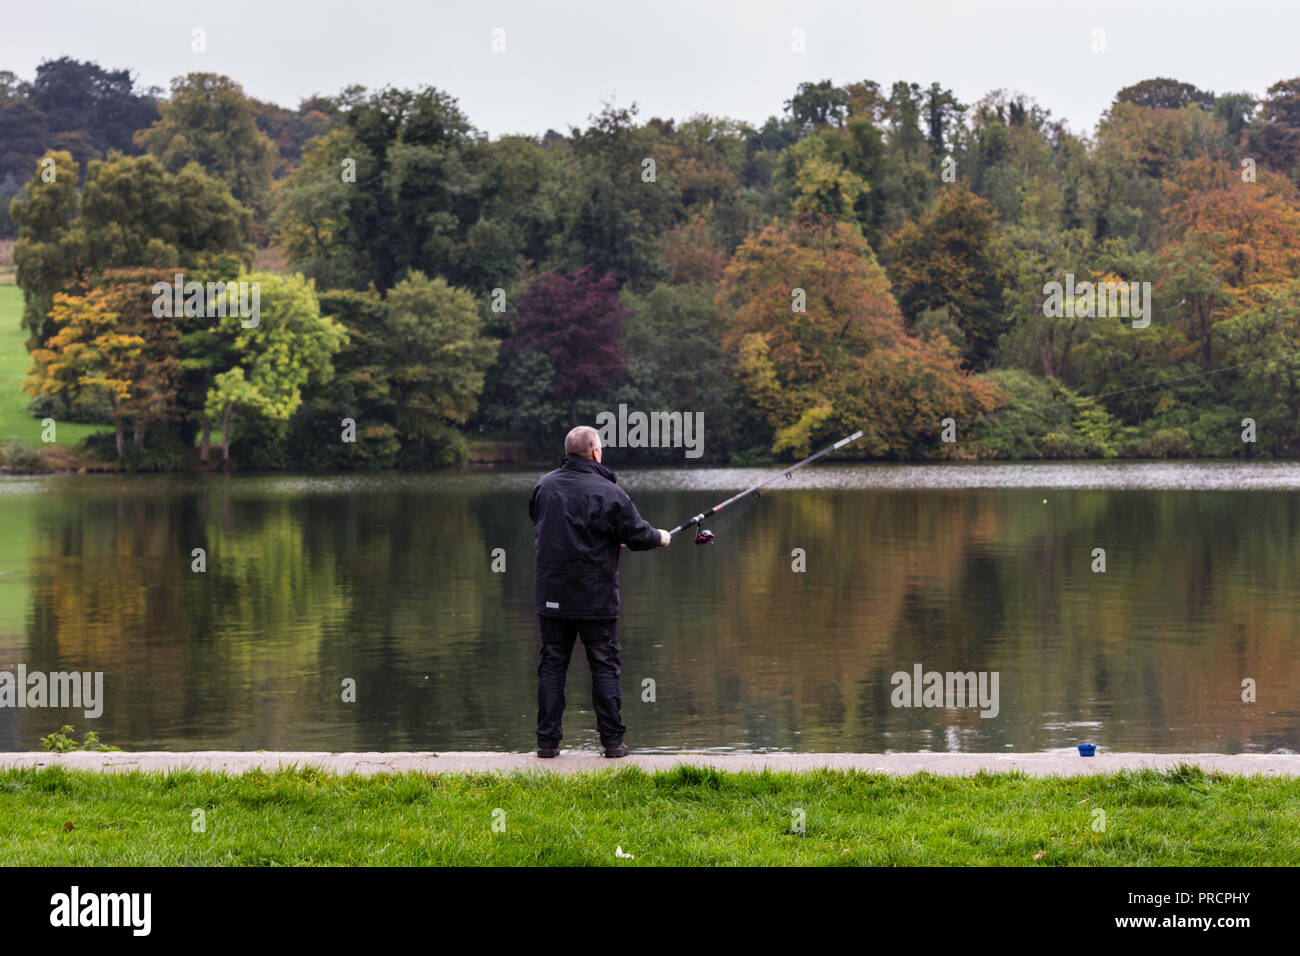 Un pêcheur casting son fil de pêche dans le lac. Castlewellan Forest Park, N.Ireland. Banque D'Images